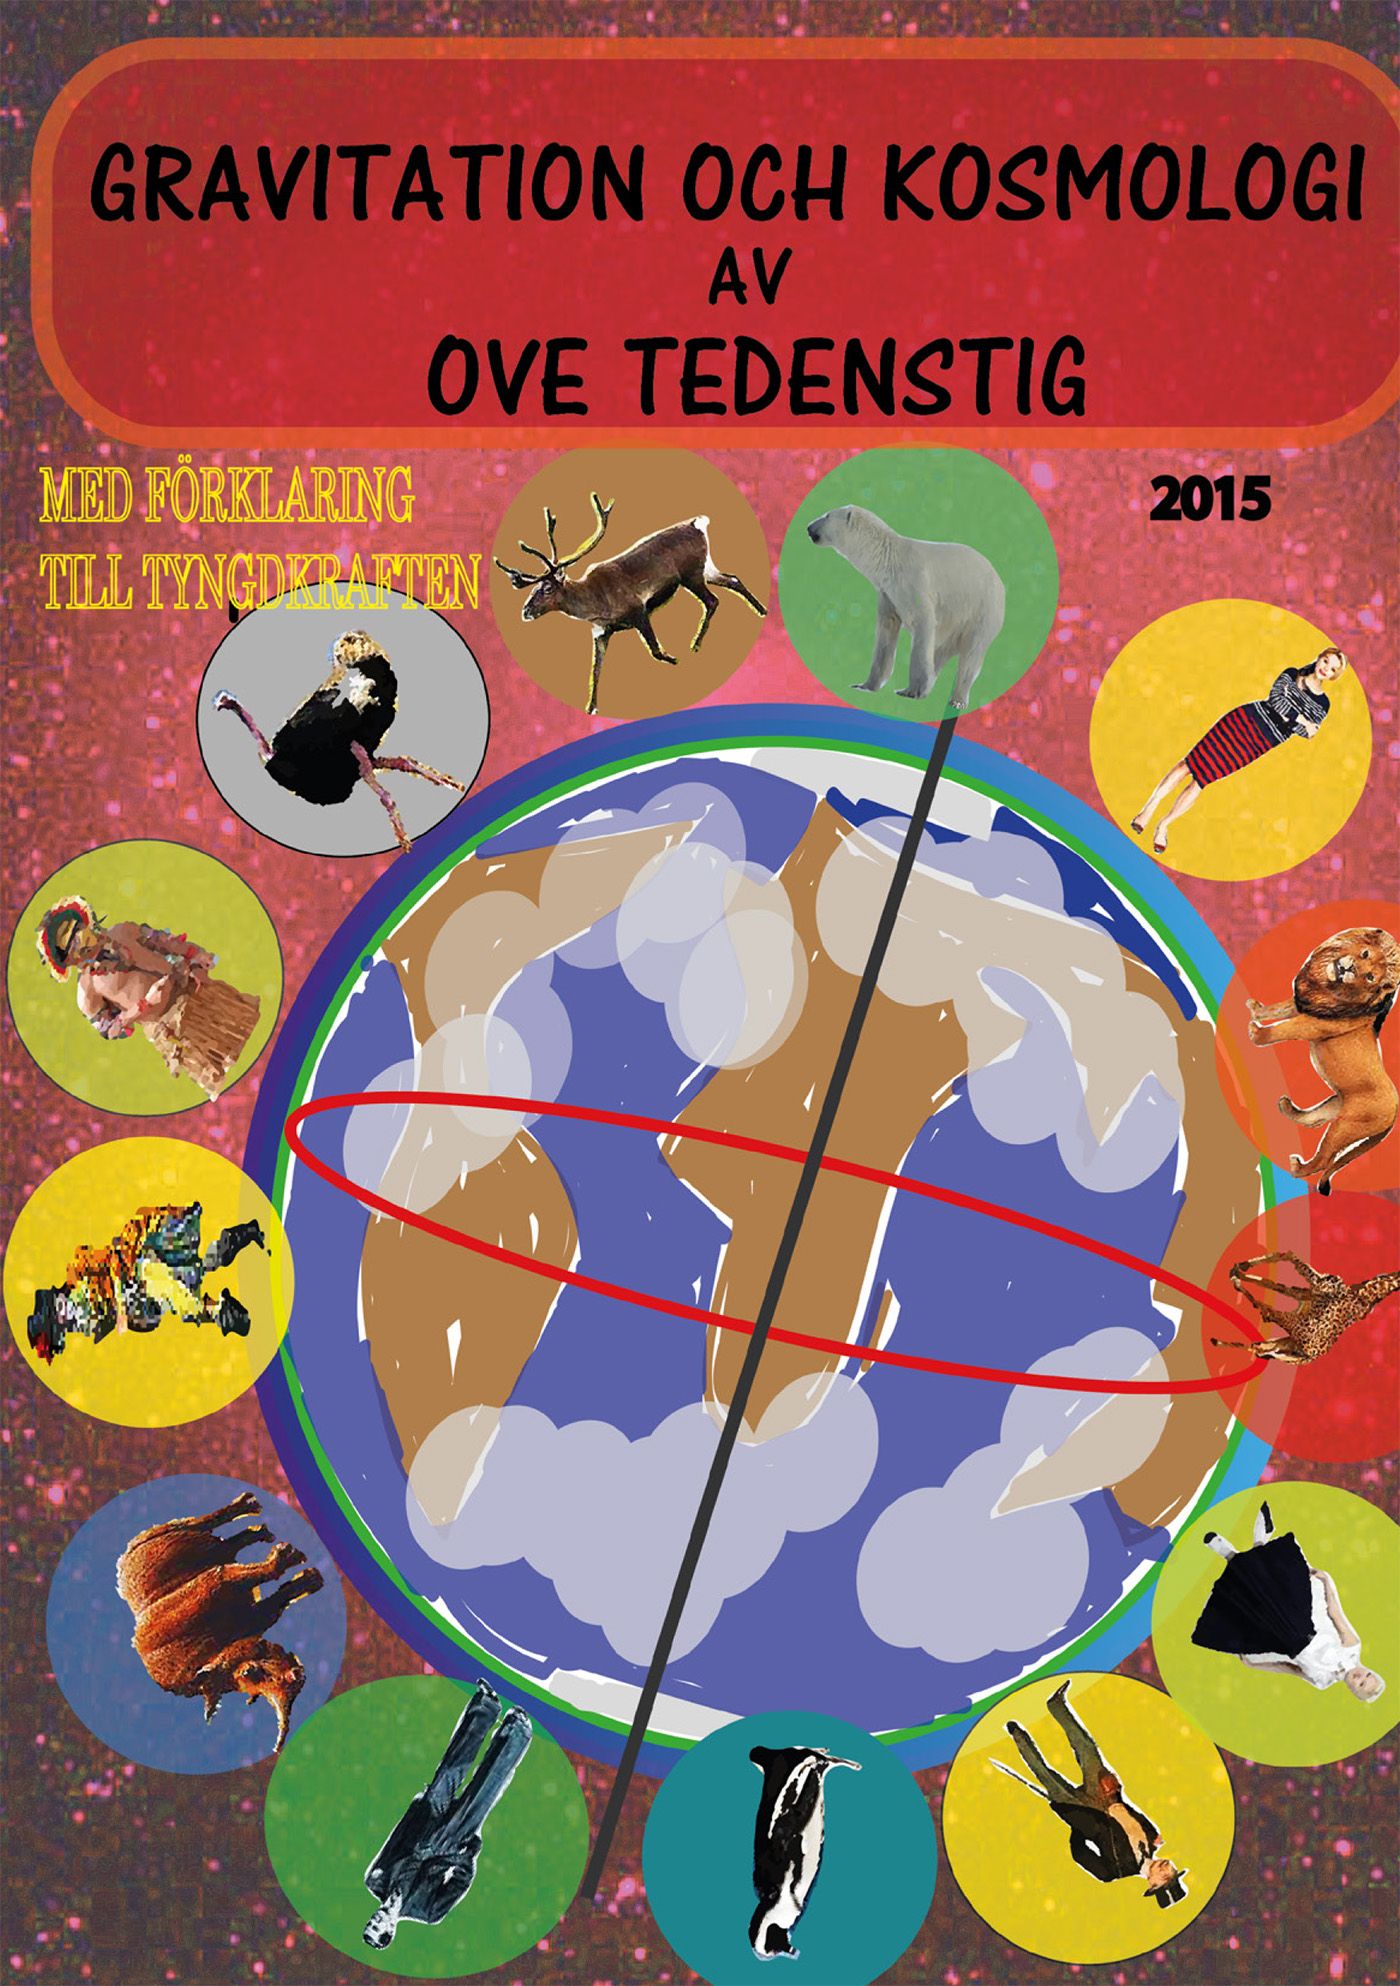 Gravitation och kosmologi 2015 edition 1, eBook by Ove Tedenstig